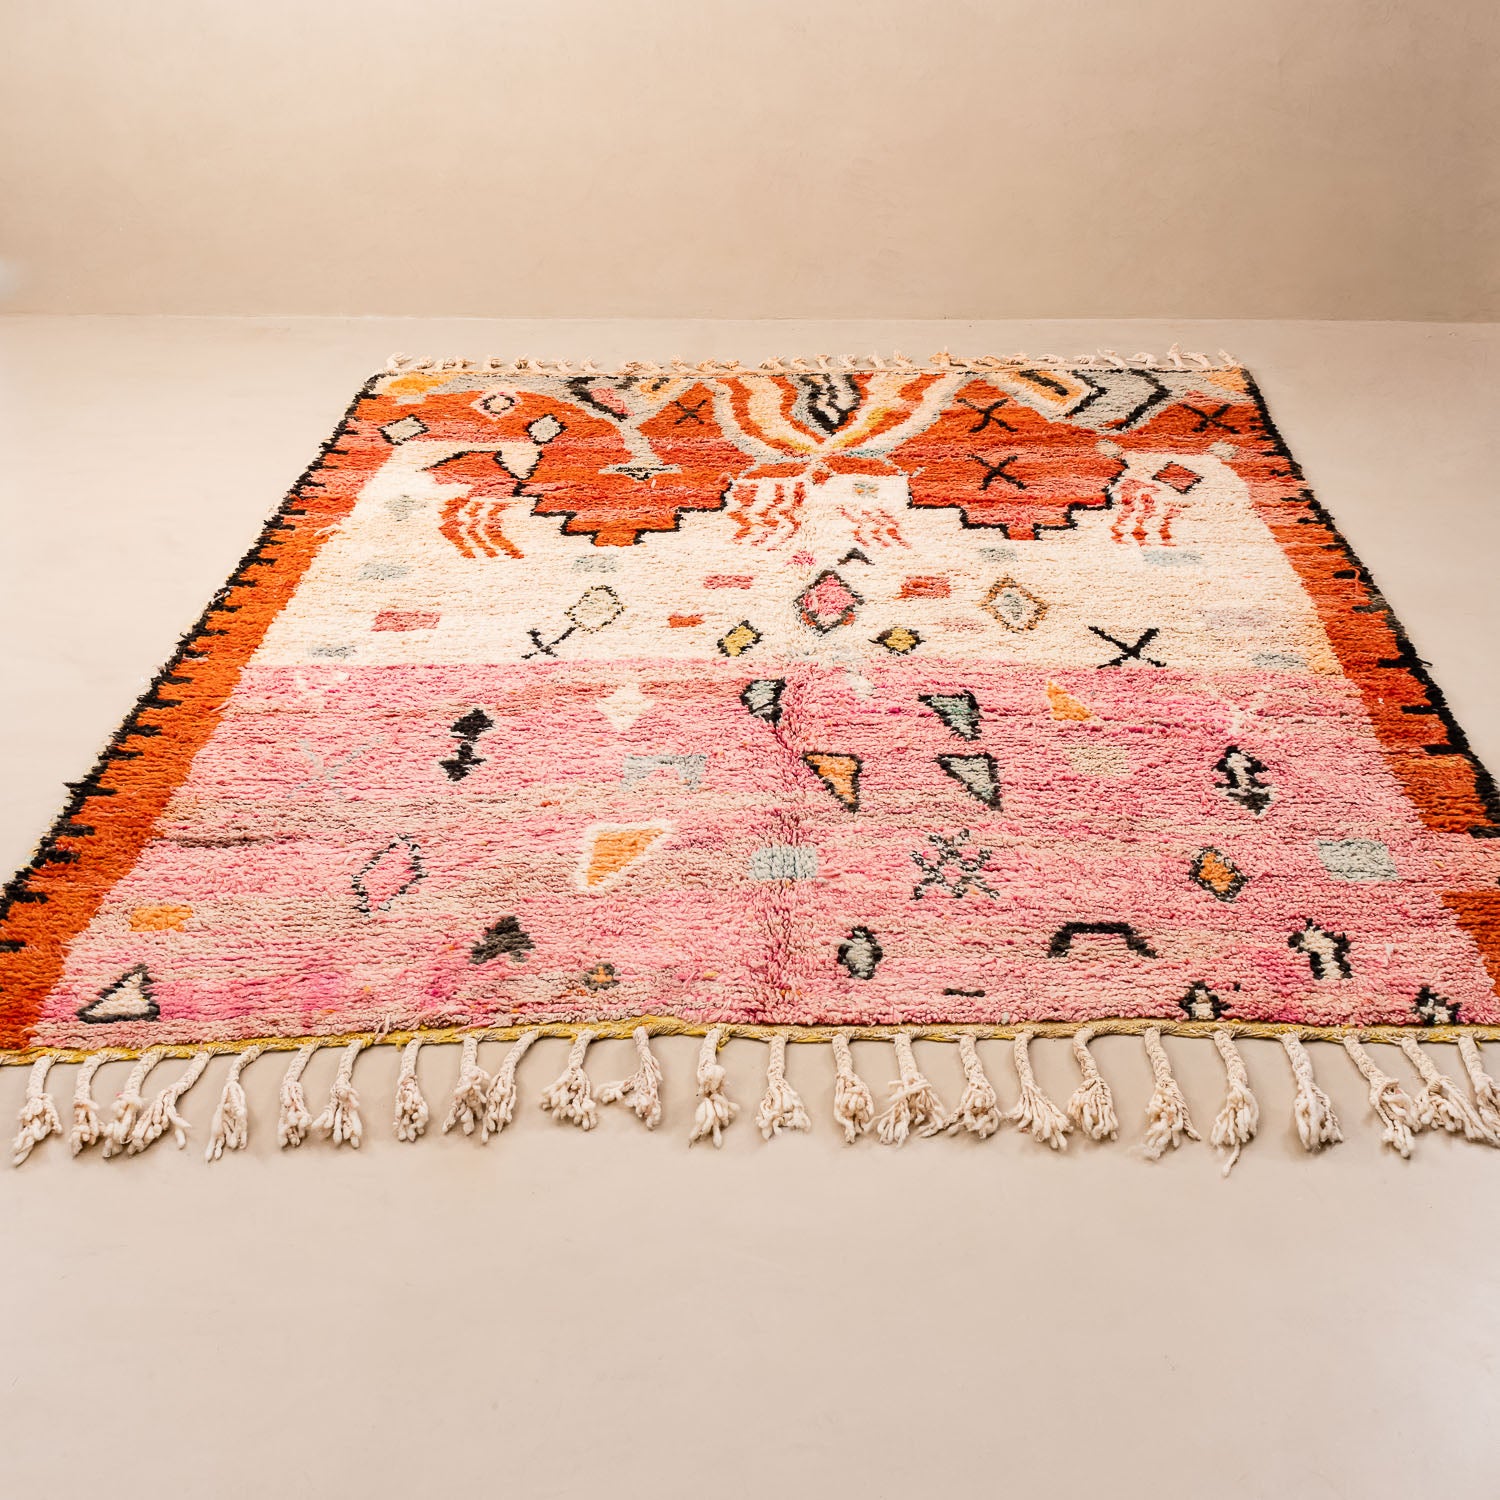 Rafia - Vintage Moroccan rug